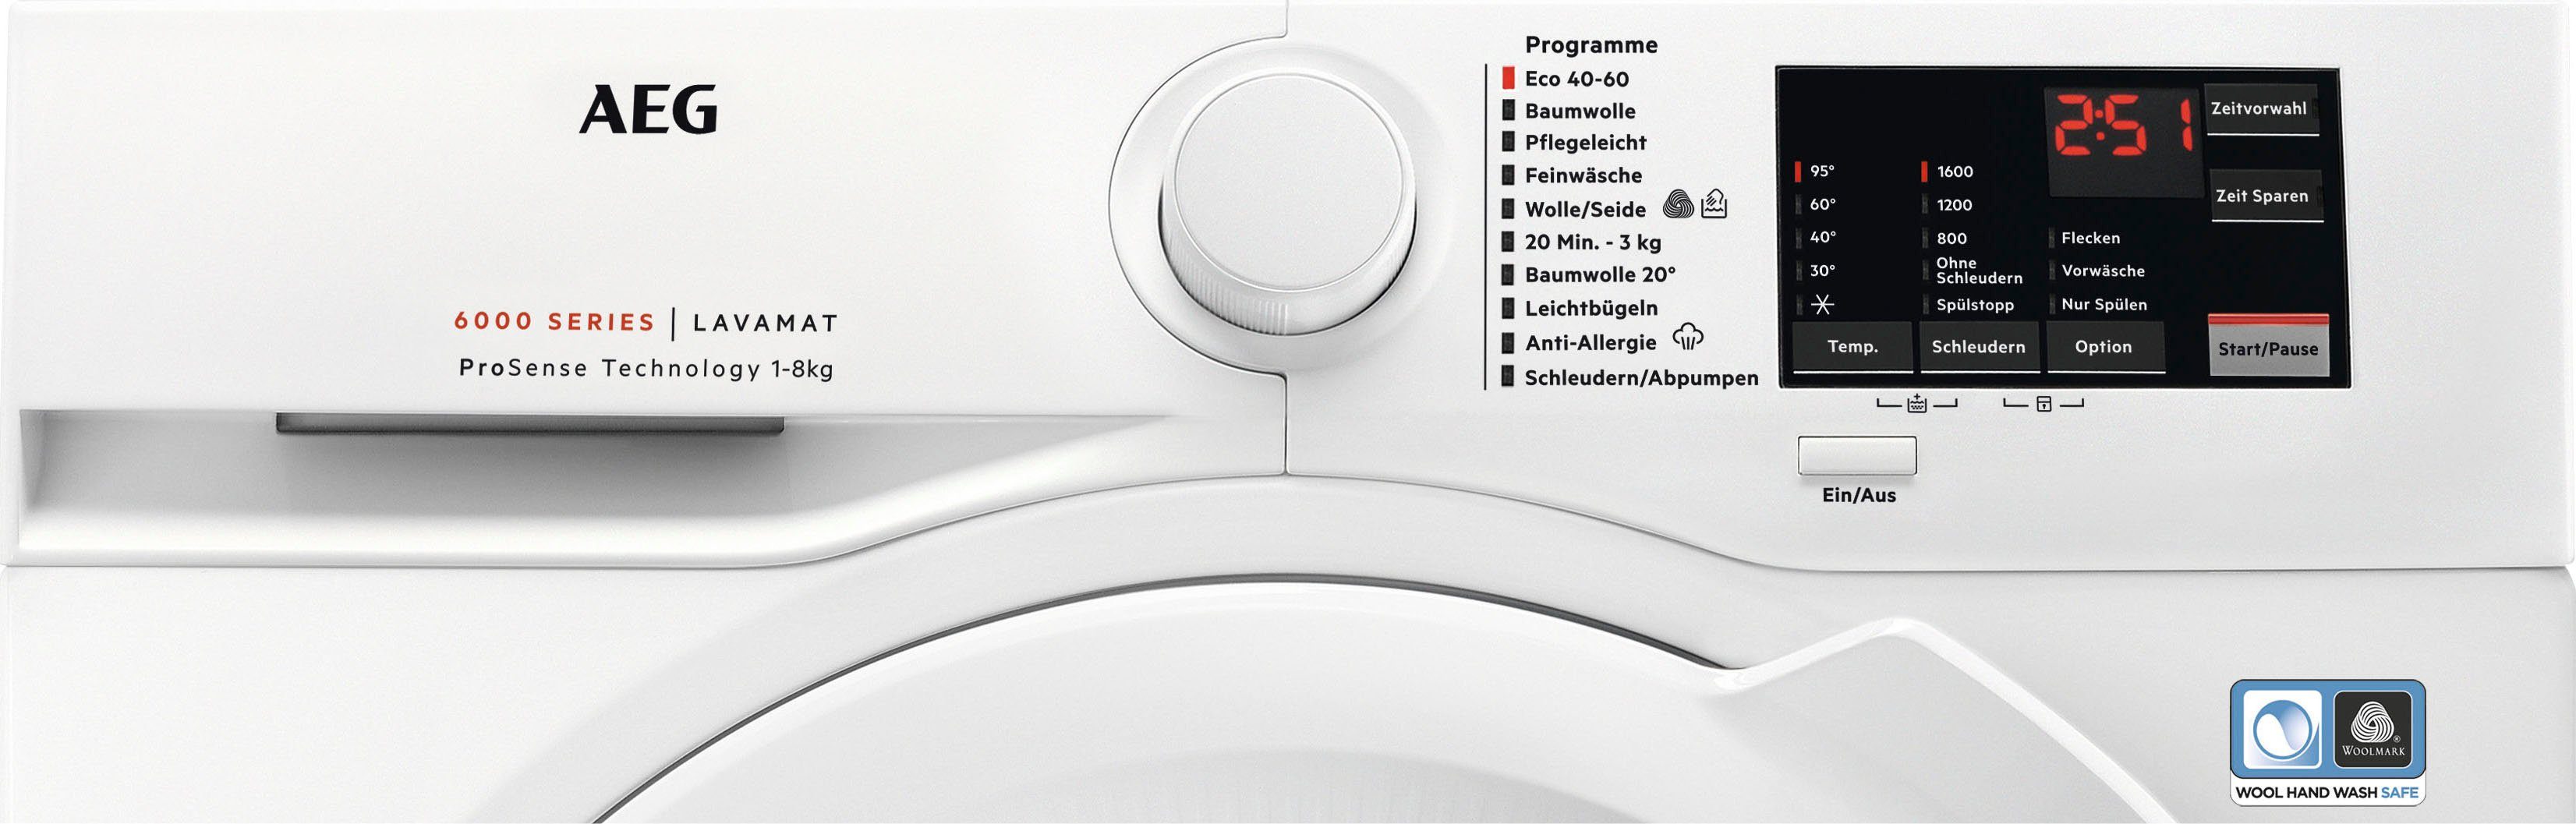 1600 Dampf Programm ProSense-Technologie U/min, mit L6FA68FL, kg, mit Serie AEG Anti-Allergie Waschmaschine 8 6000 Hygiene-/